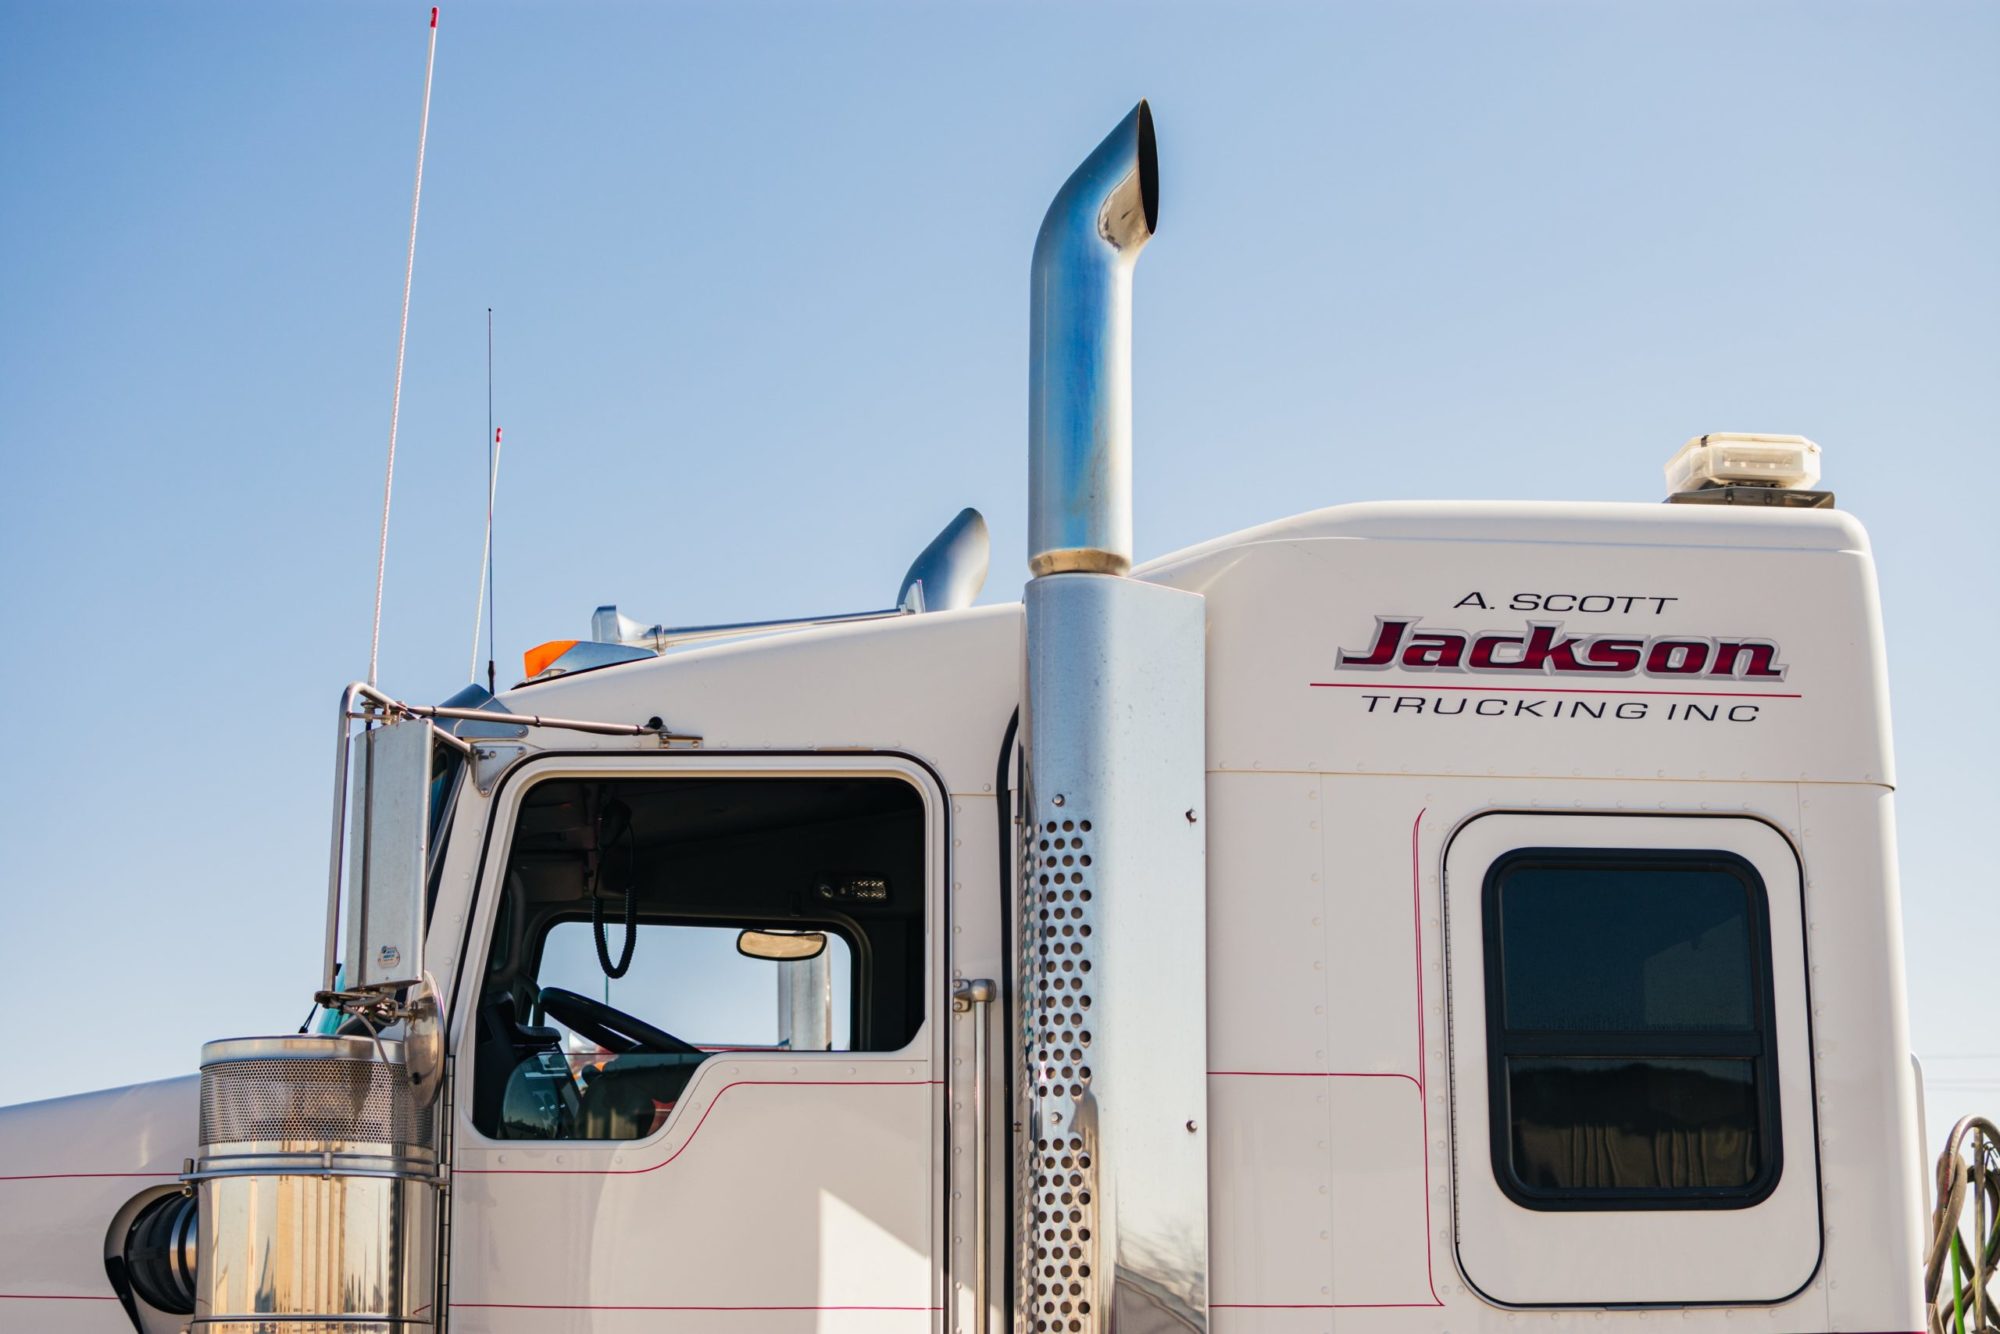 Scott Jackson Trucking offers trucking services near Twin Falls, ID.